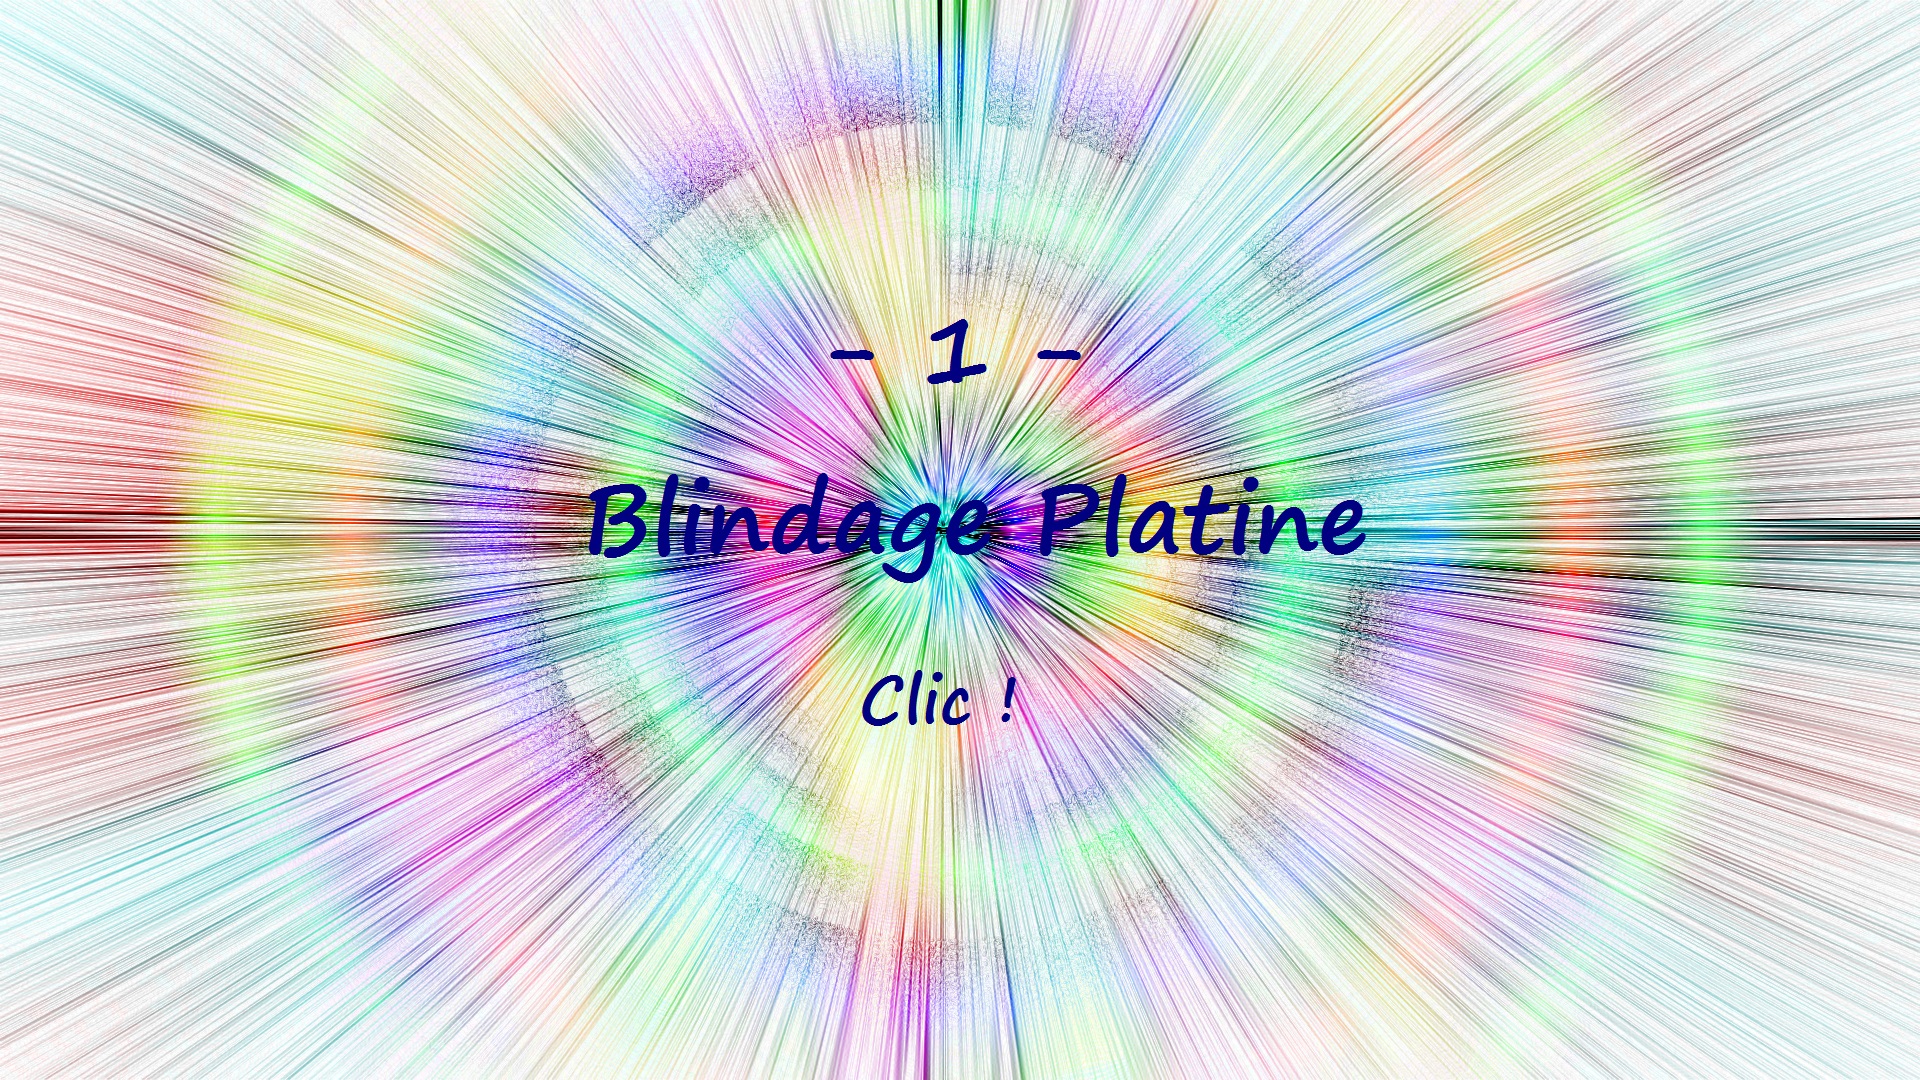 1 Blindage Platine